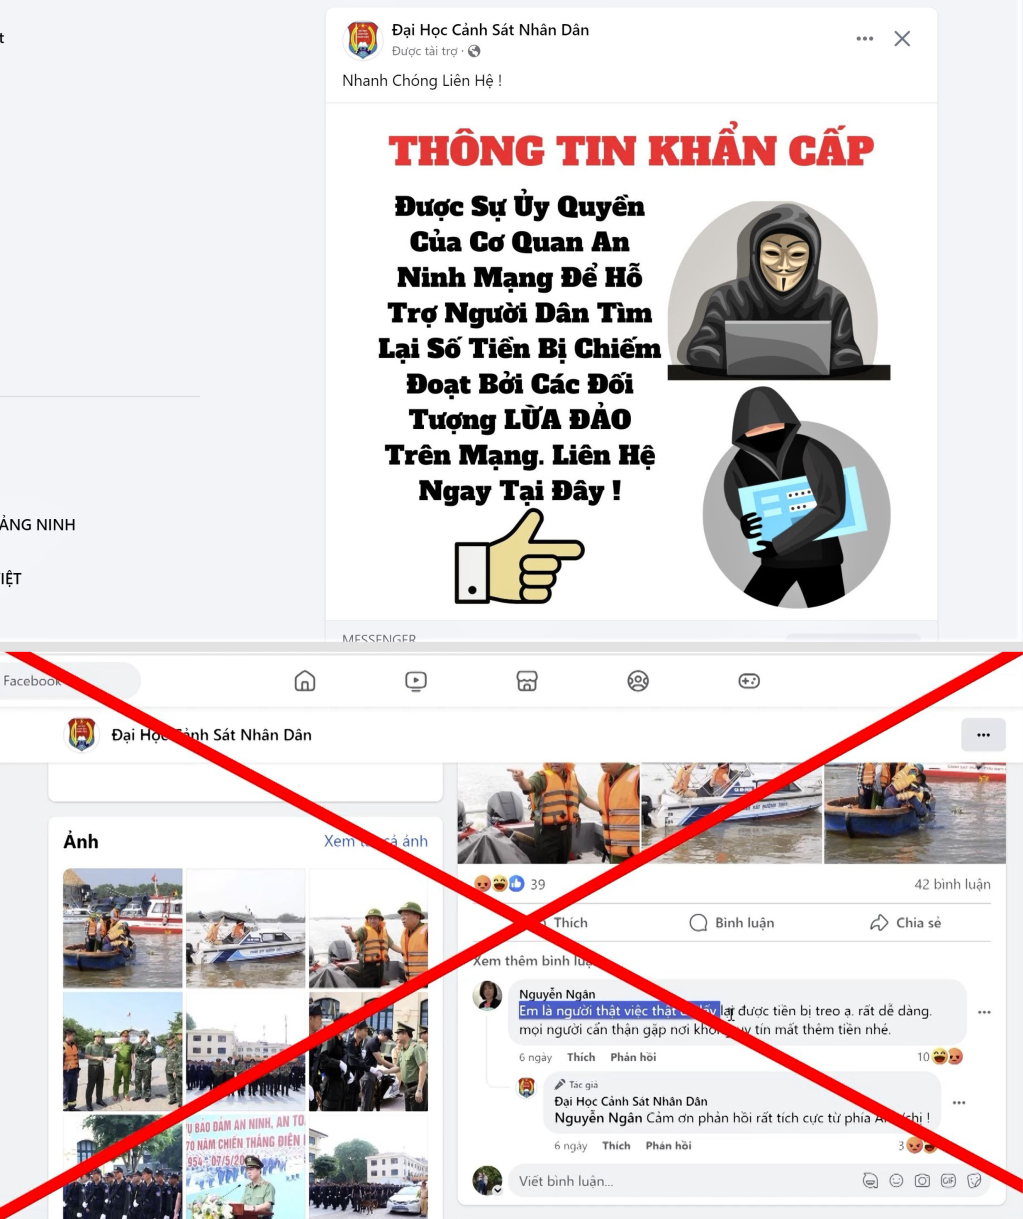 Một page trên mạng xã hội facebook mạo danh Đại học Cảnh sát Nhân dân chạy quảng cáo lừa đảo lấy lại tài sản đã bị chiếm đoạt.